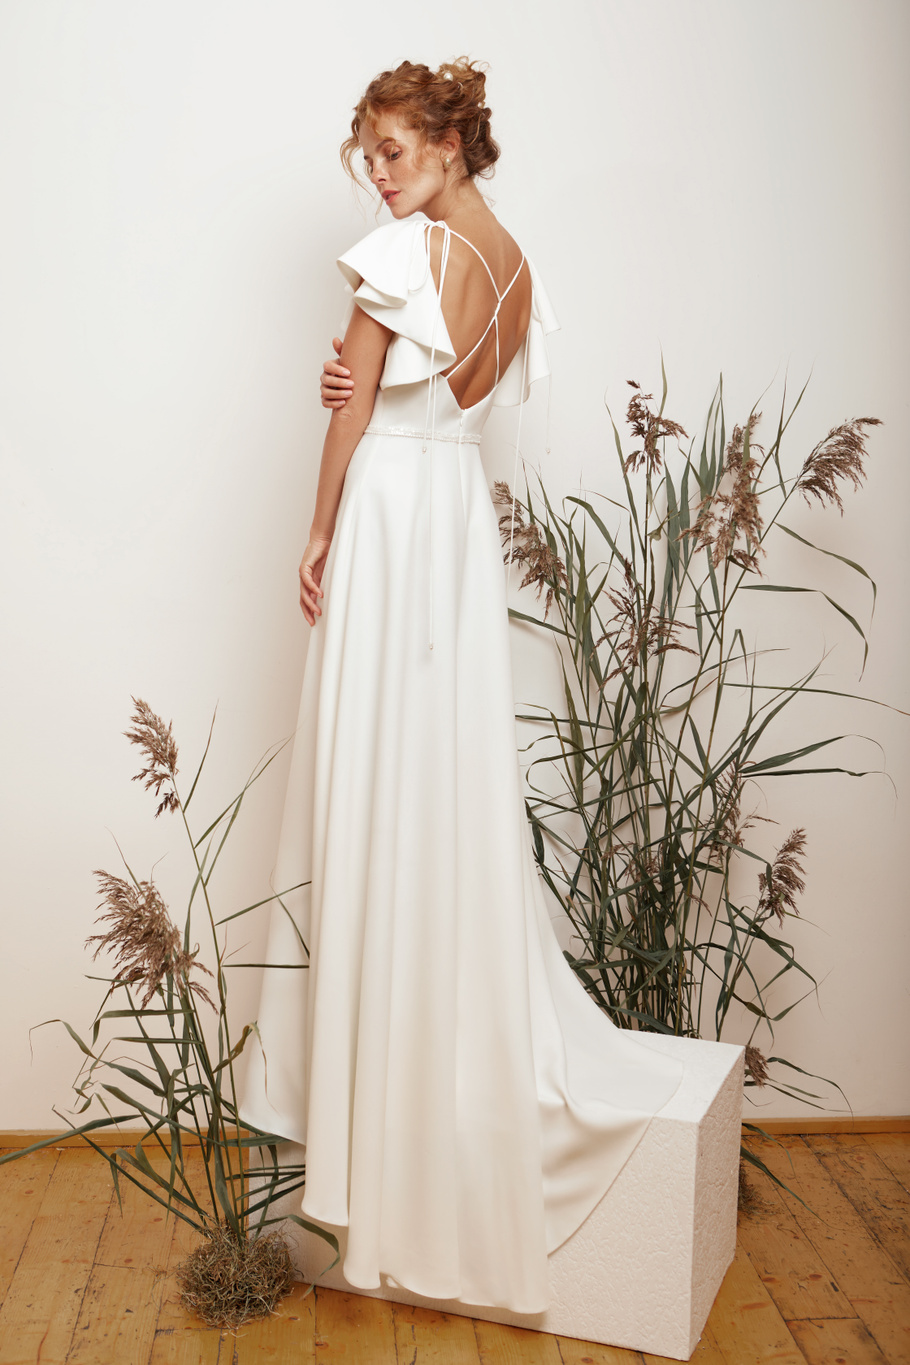 Купить свадебное платье «Ситлин» Мэрри Марк из коллекции 2020 года в Екатеринбурге